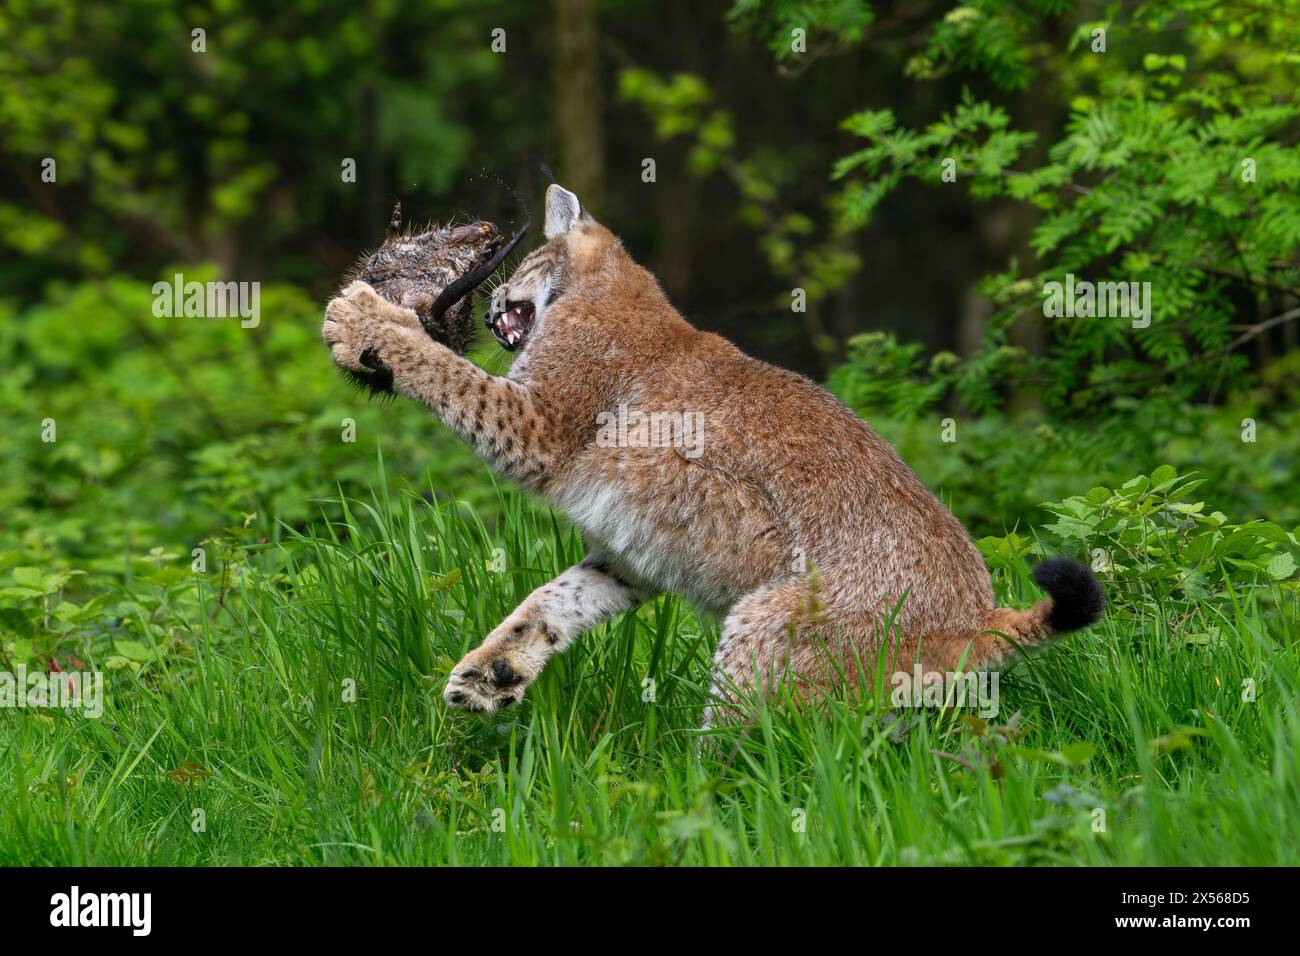 Chasse au lynx eurasien (Lynx lynx) capture de juvéniles de rats musqués (Ondatra zibethicus) en proie dans des fourrés à la lisière de la forêt Banque D'Images